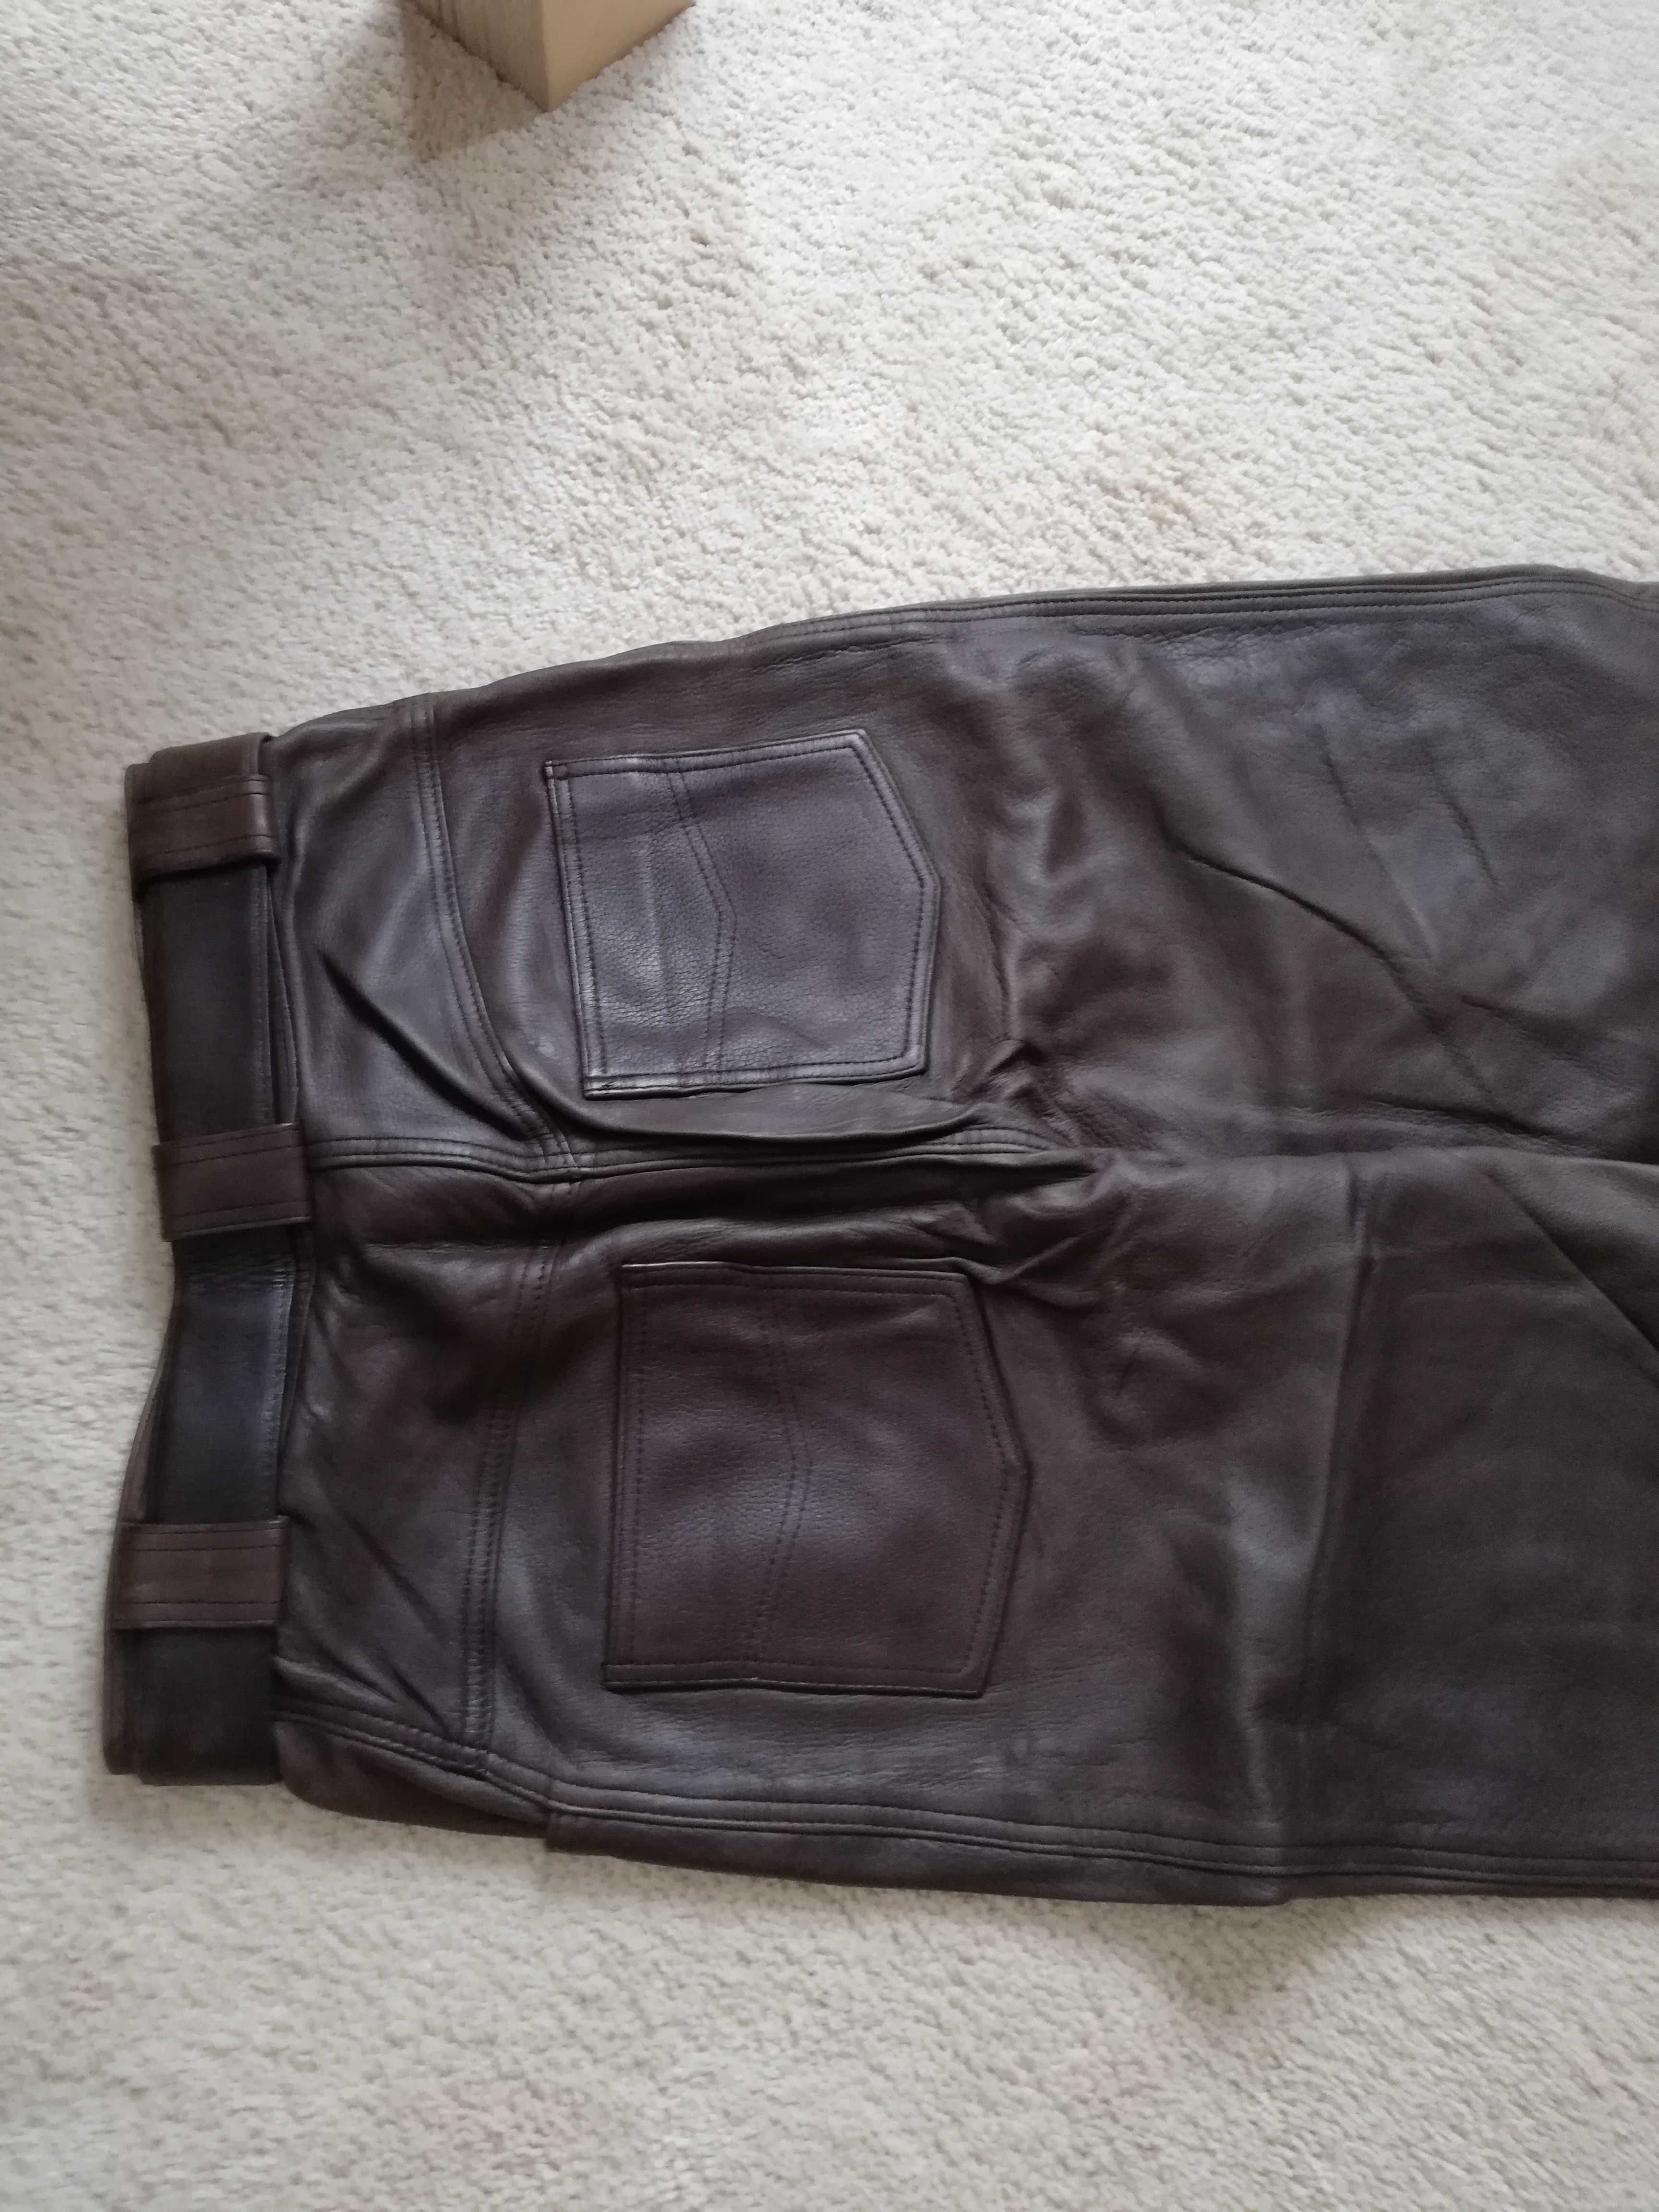 Дамски  панталони  от естествена кожа(напа), подплатени, размер 36